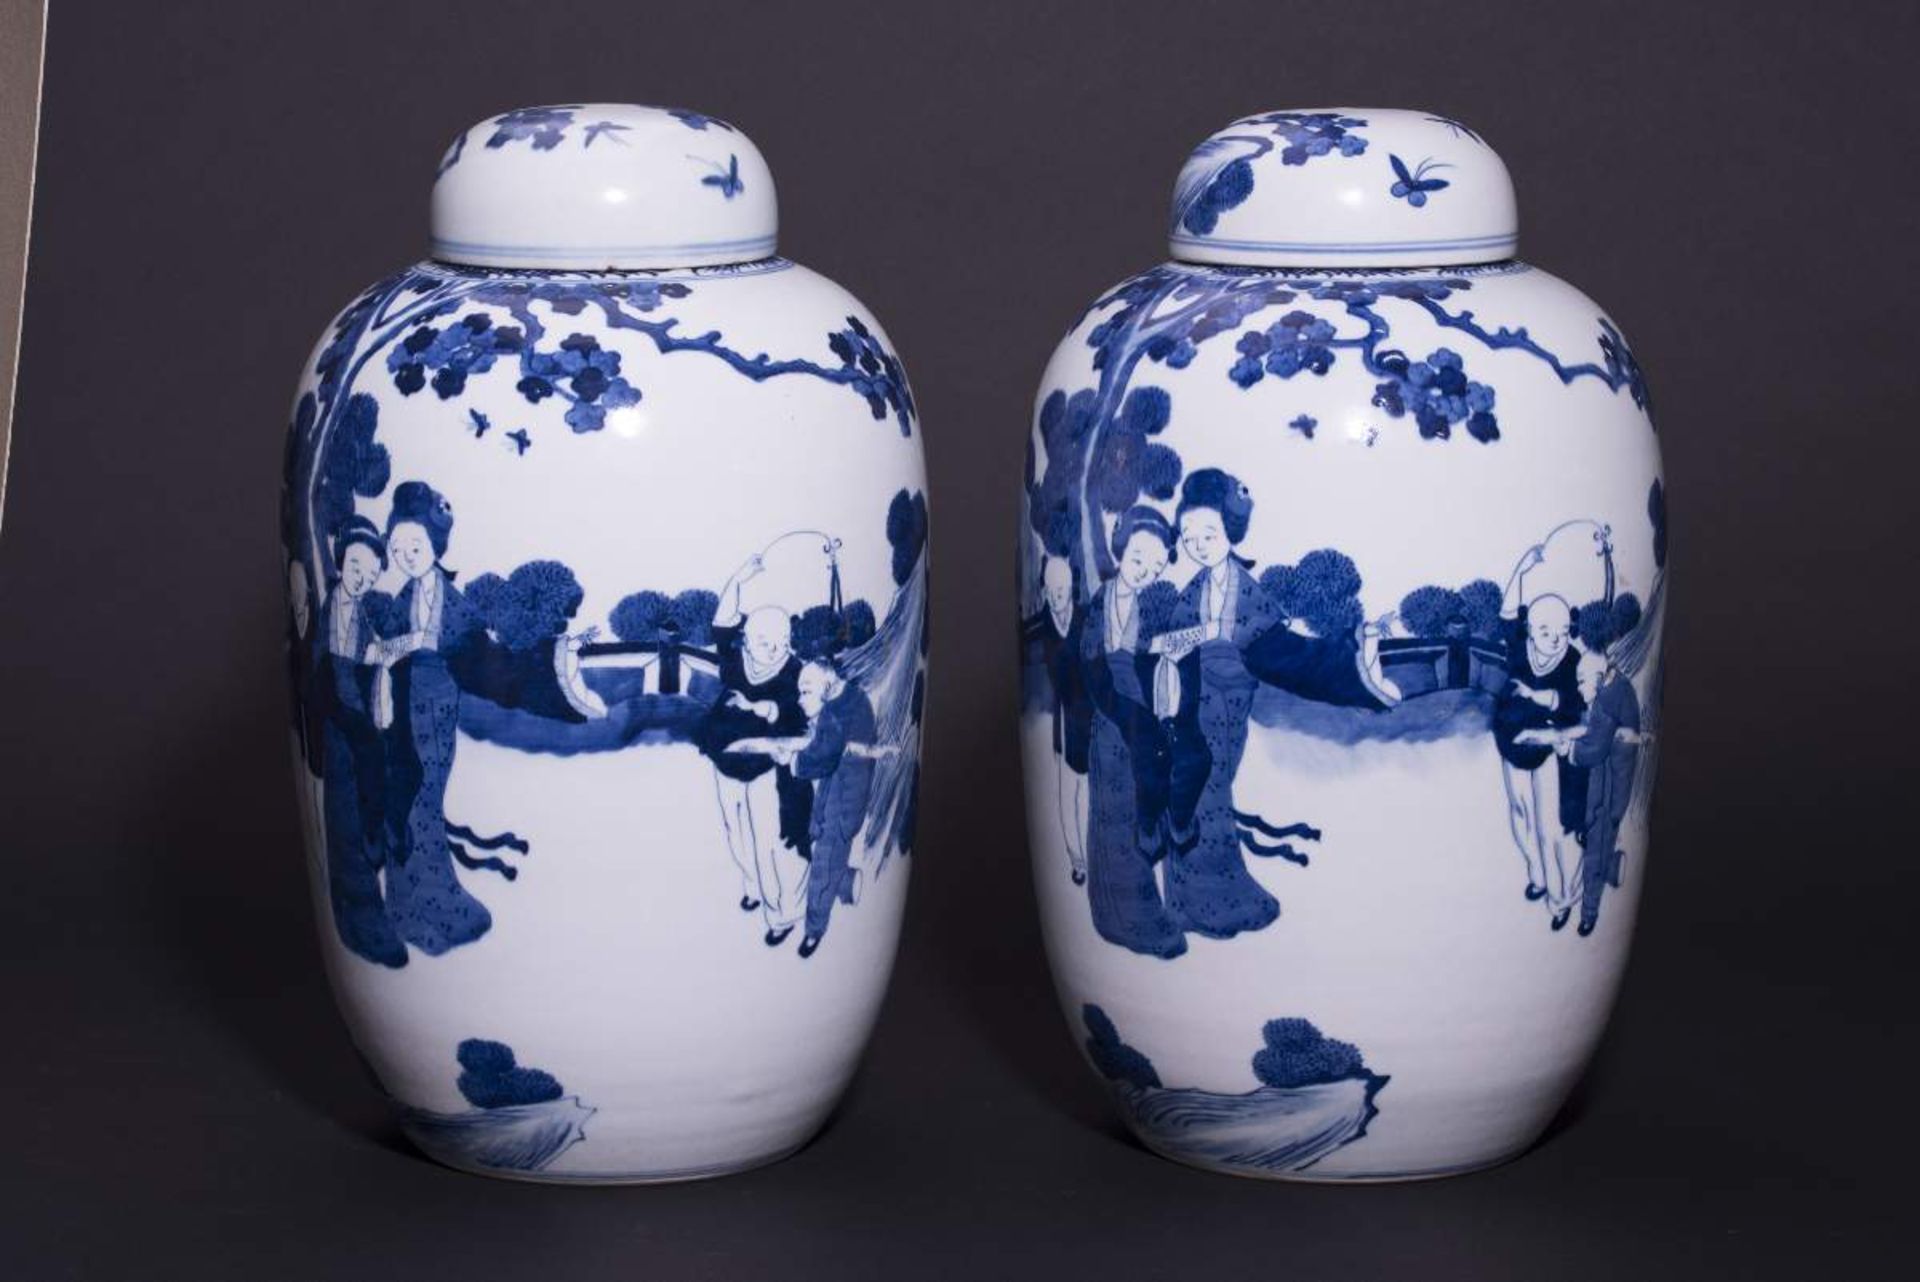 PAAR DECKELVASEN MIT GARTENSZENENBlauweißes Porzellan. China, Qing-Dynastie, 19. Jh.Mit Bodenmarke - Bild 4 aus 6